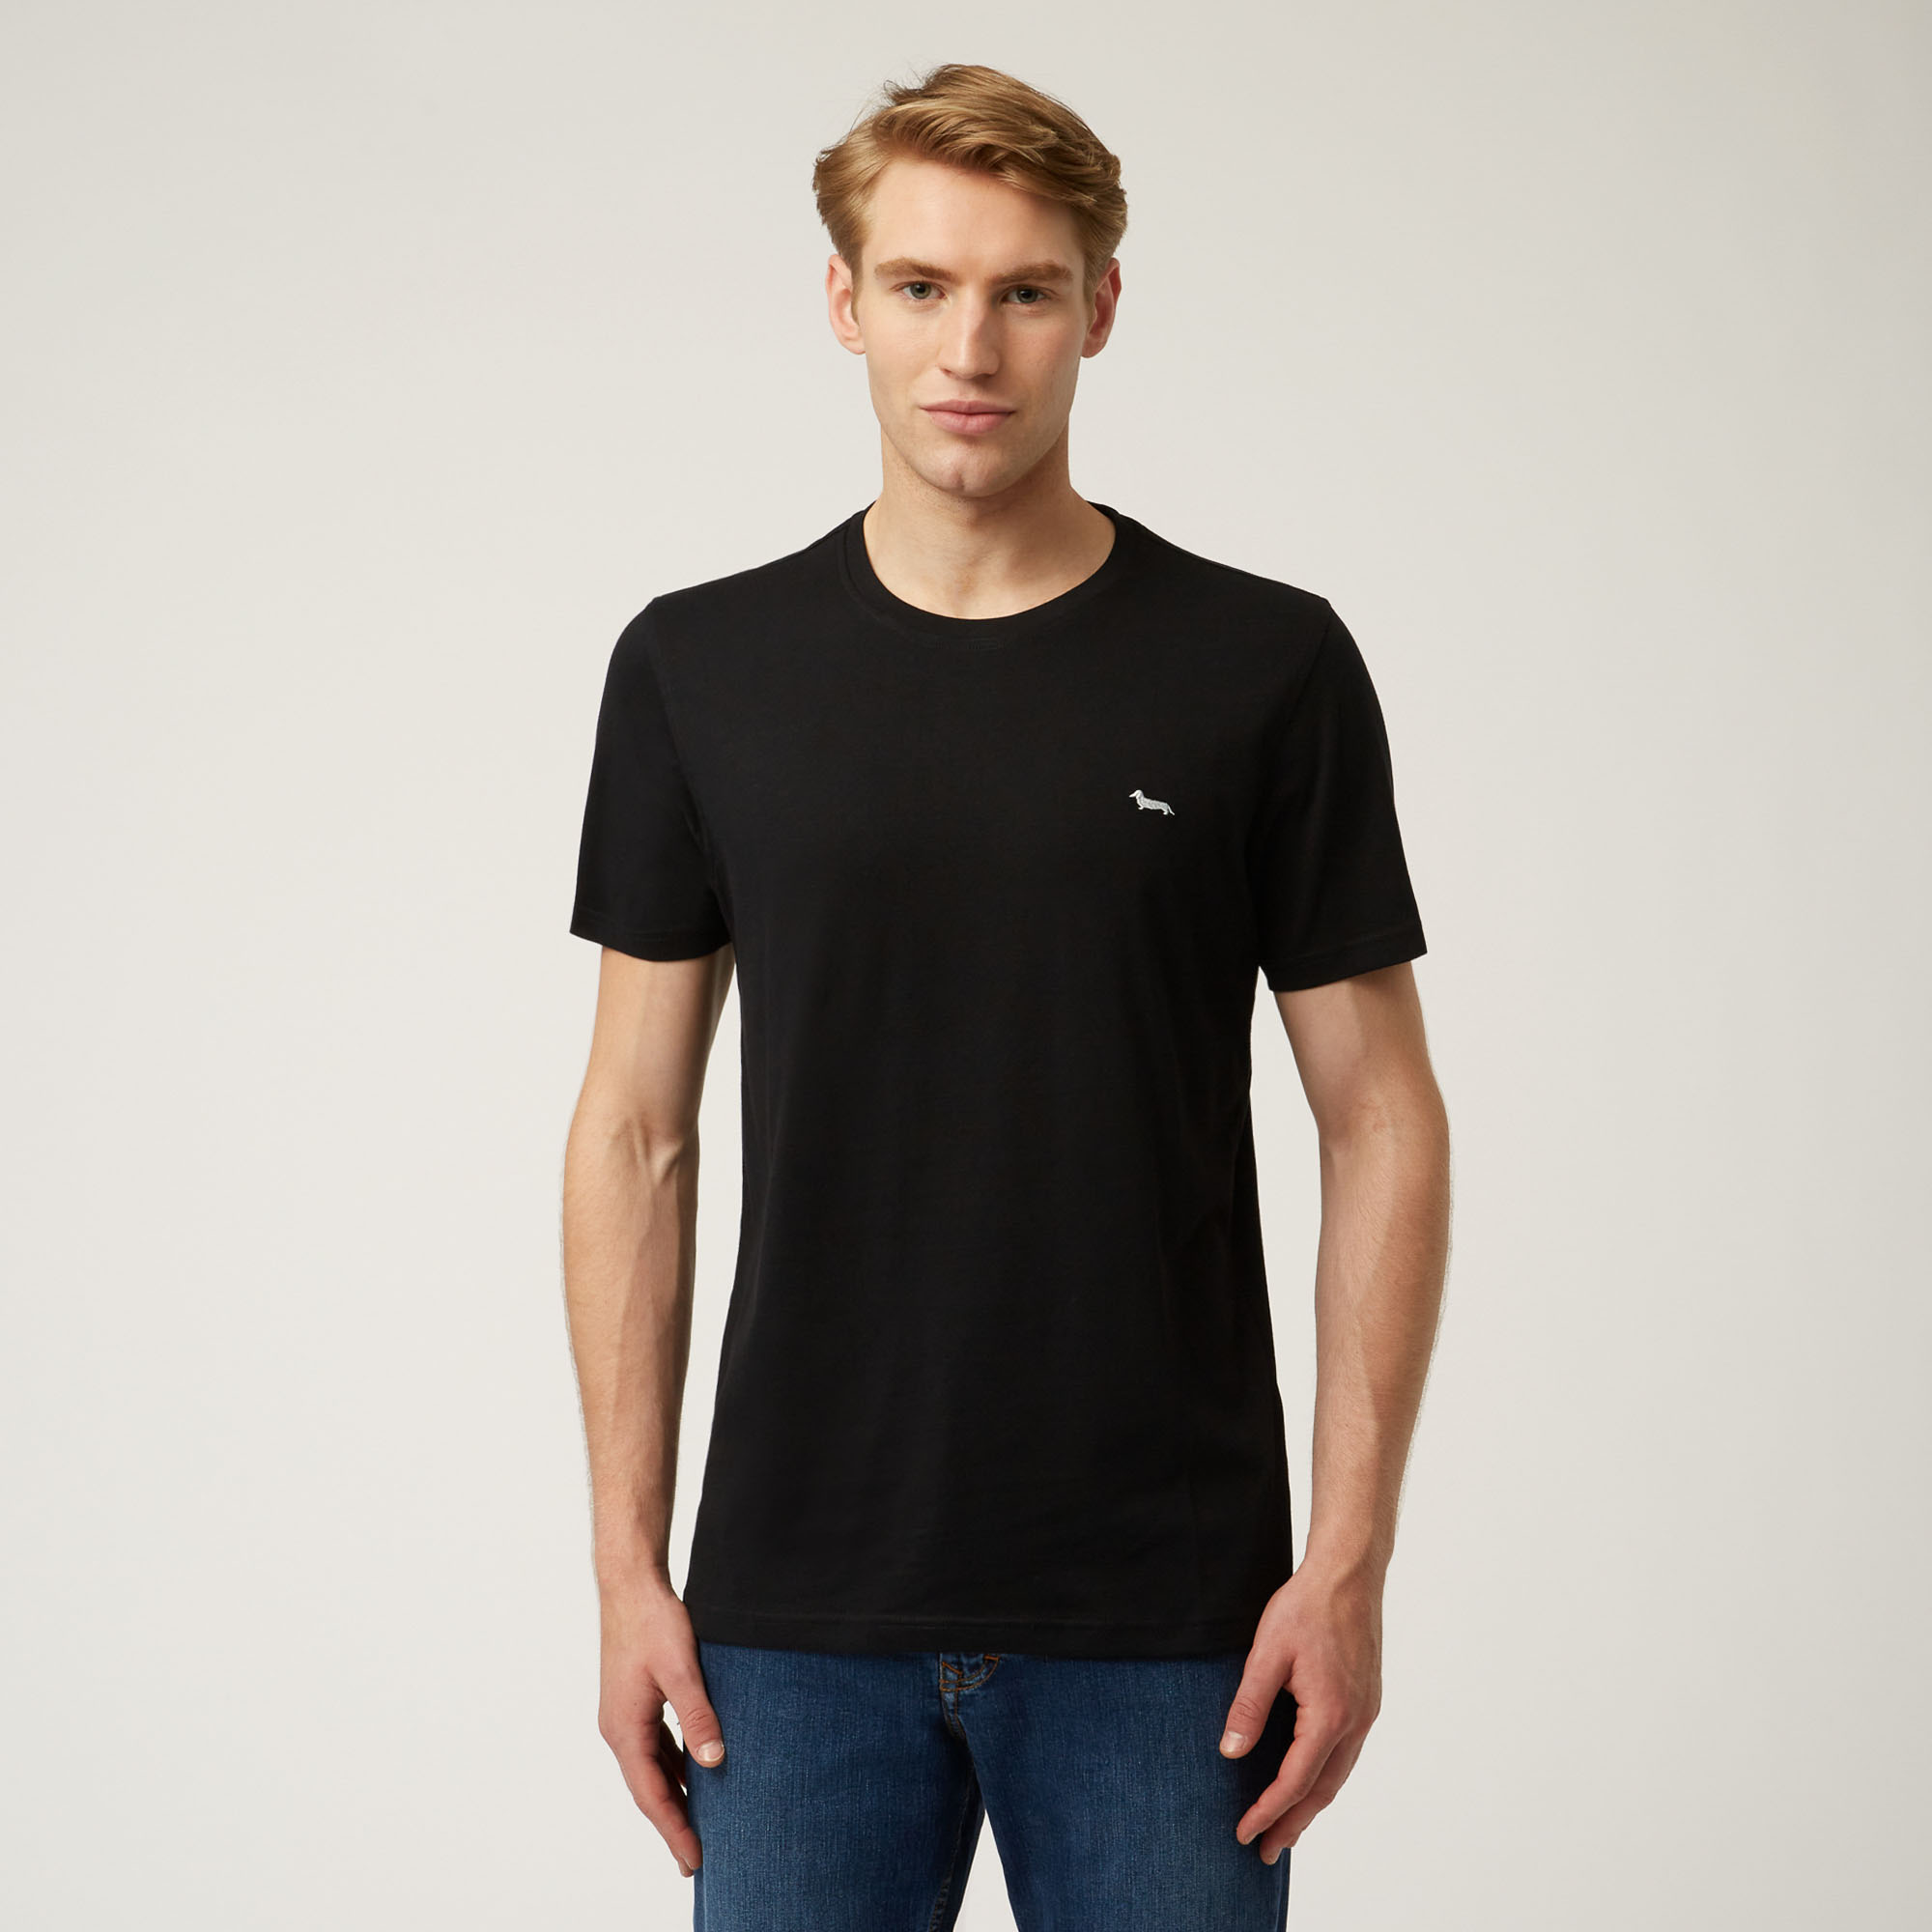 Einfarbiges Essentials t shirt aus baumwolle, Schwarz, large